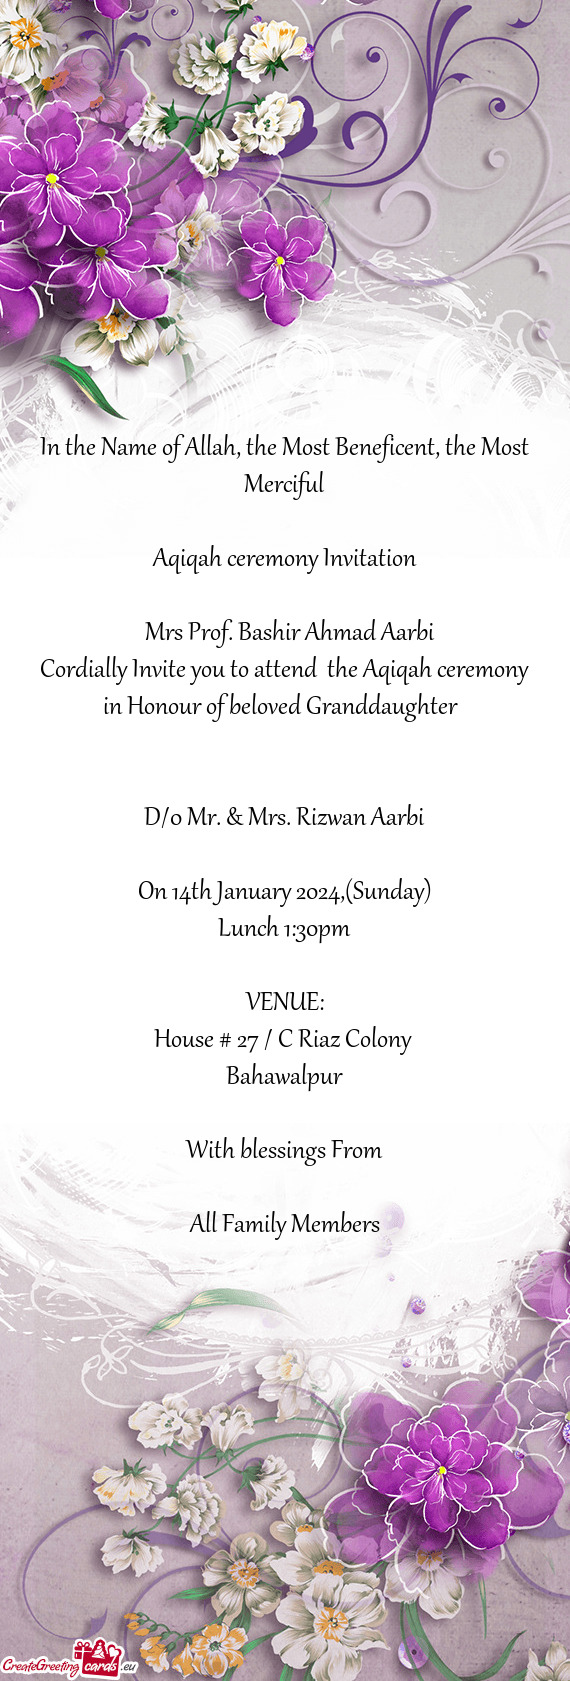 Mrs Prof. Bashir Ahmad Aarbi